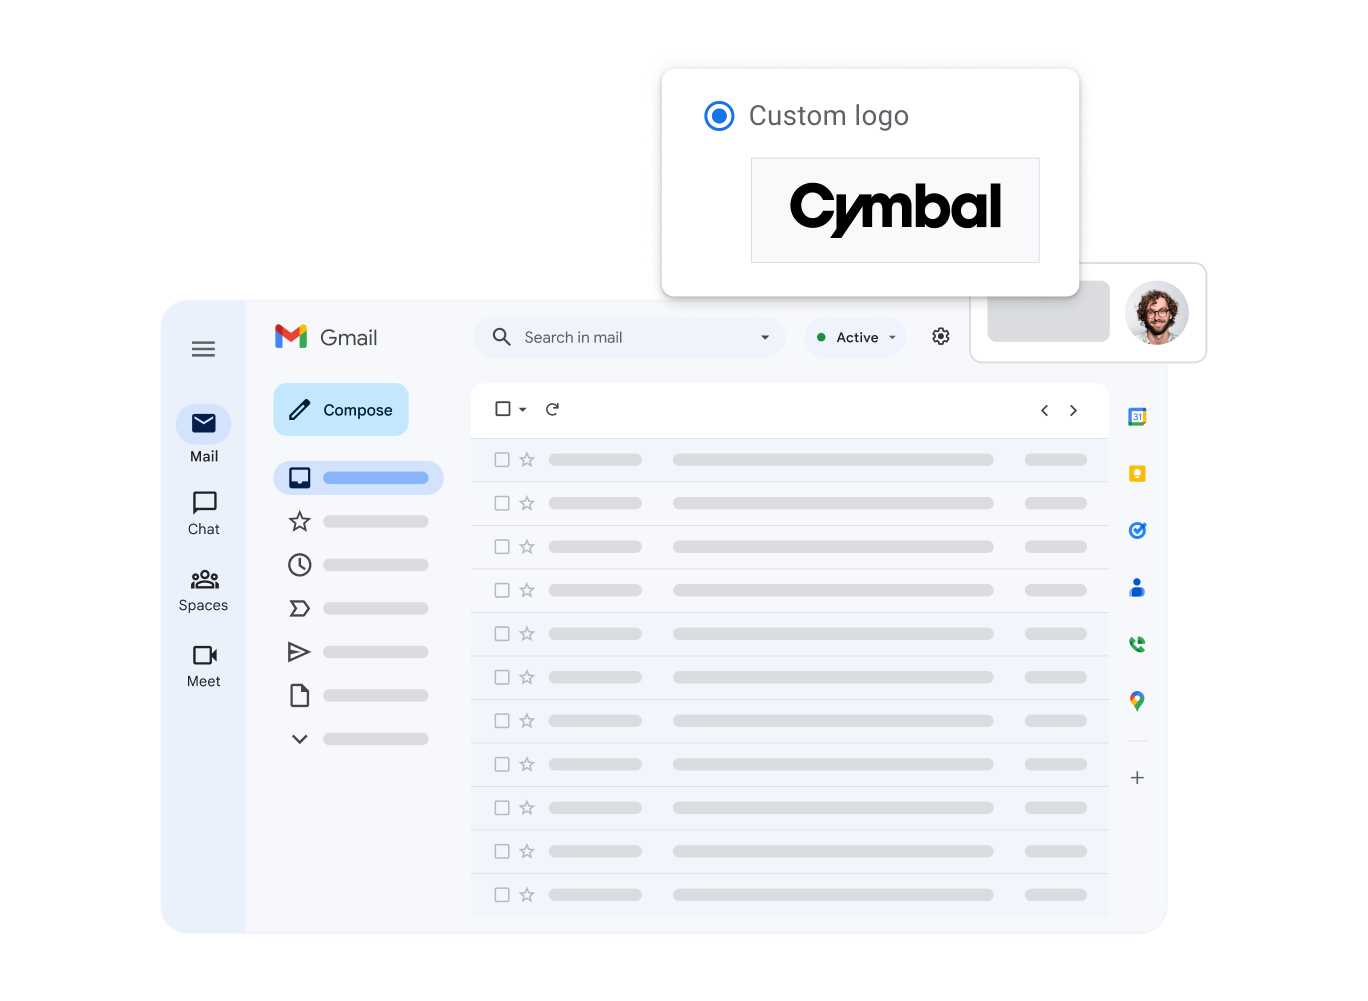 Uma visualização estilizada da interface do Gmail destacando o logotipo personalizado da empresa do usuário.